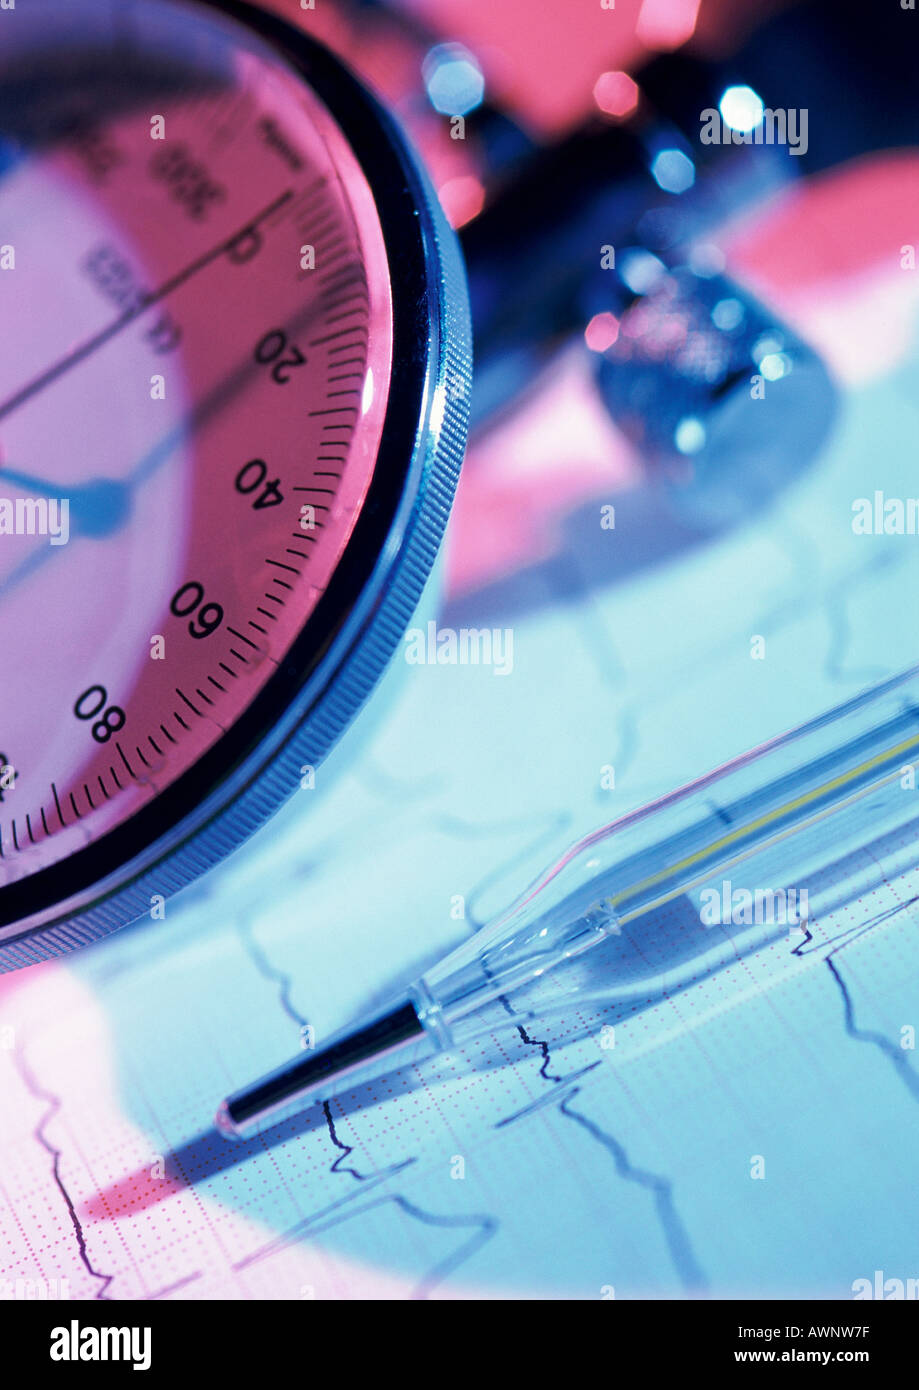 Blutdruckmessgerät (Instrument zur Messung des Blutdrucks) und Thermometer, Teilansicht, Nahaufnahme Stockfoto